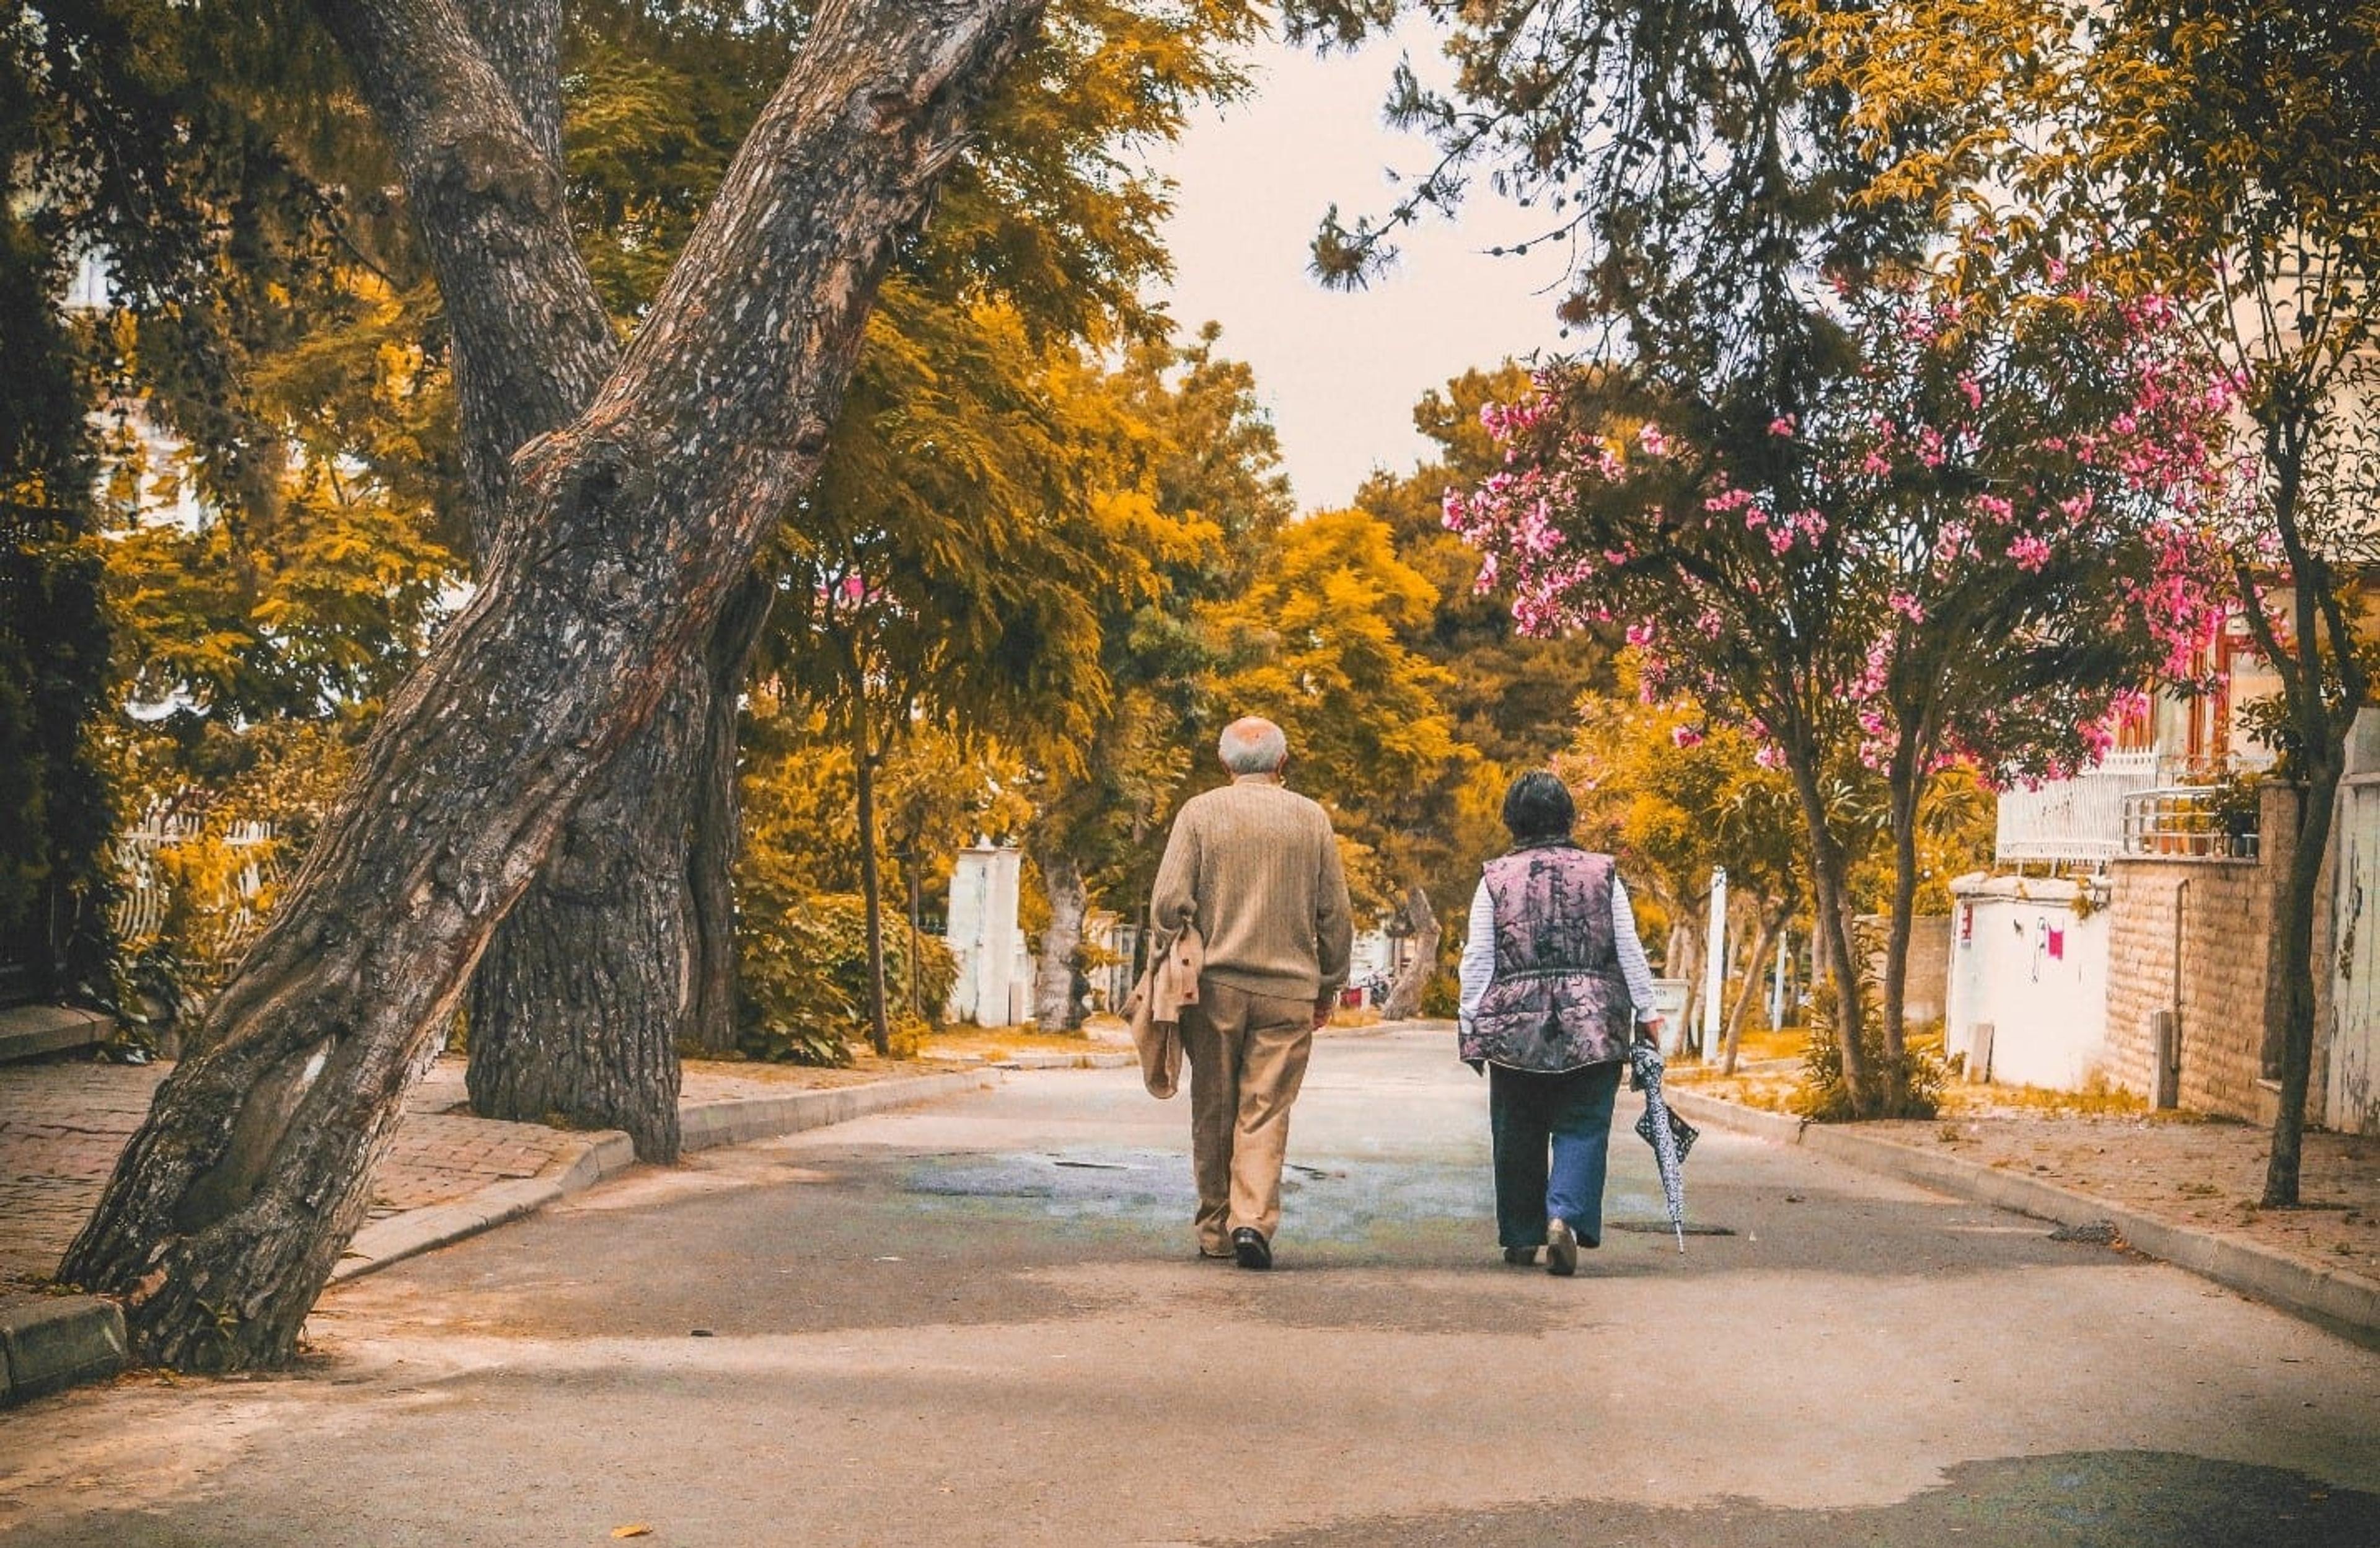 An elderly couple walking down a street